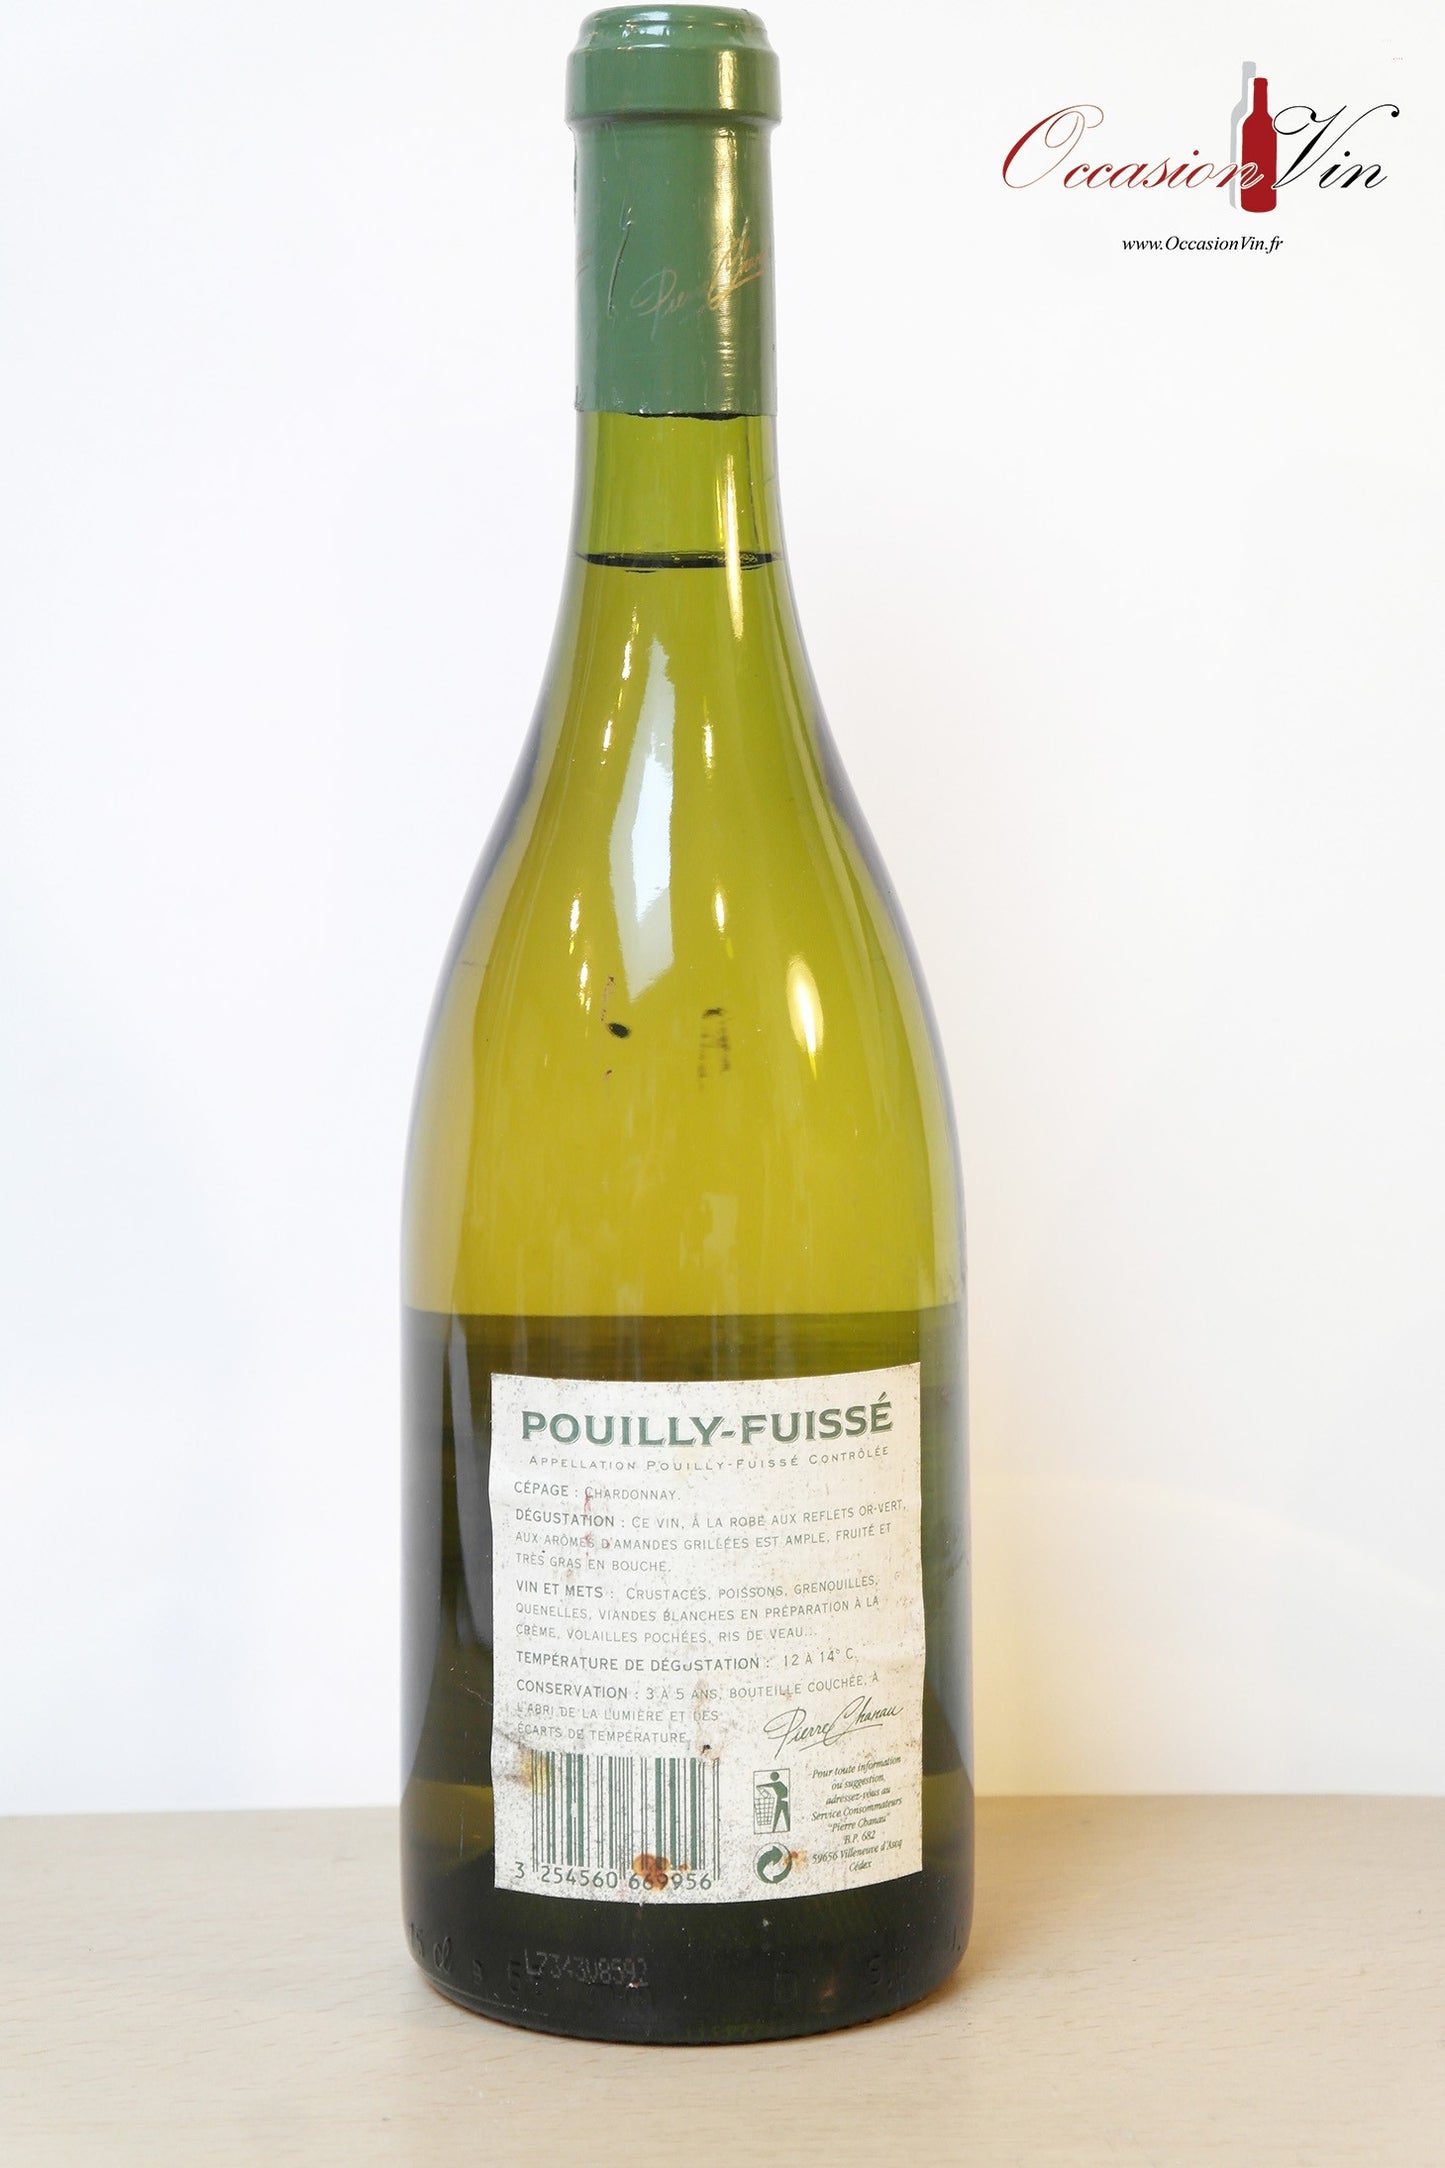 Pouilly-Fuissé Philippe d'Argenval Vin 1996